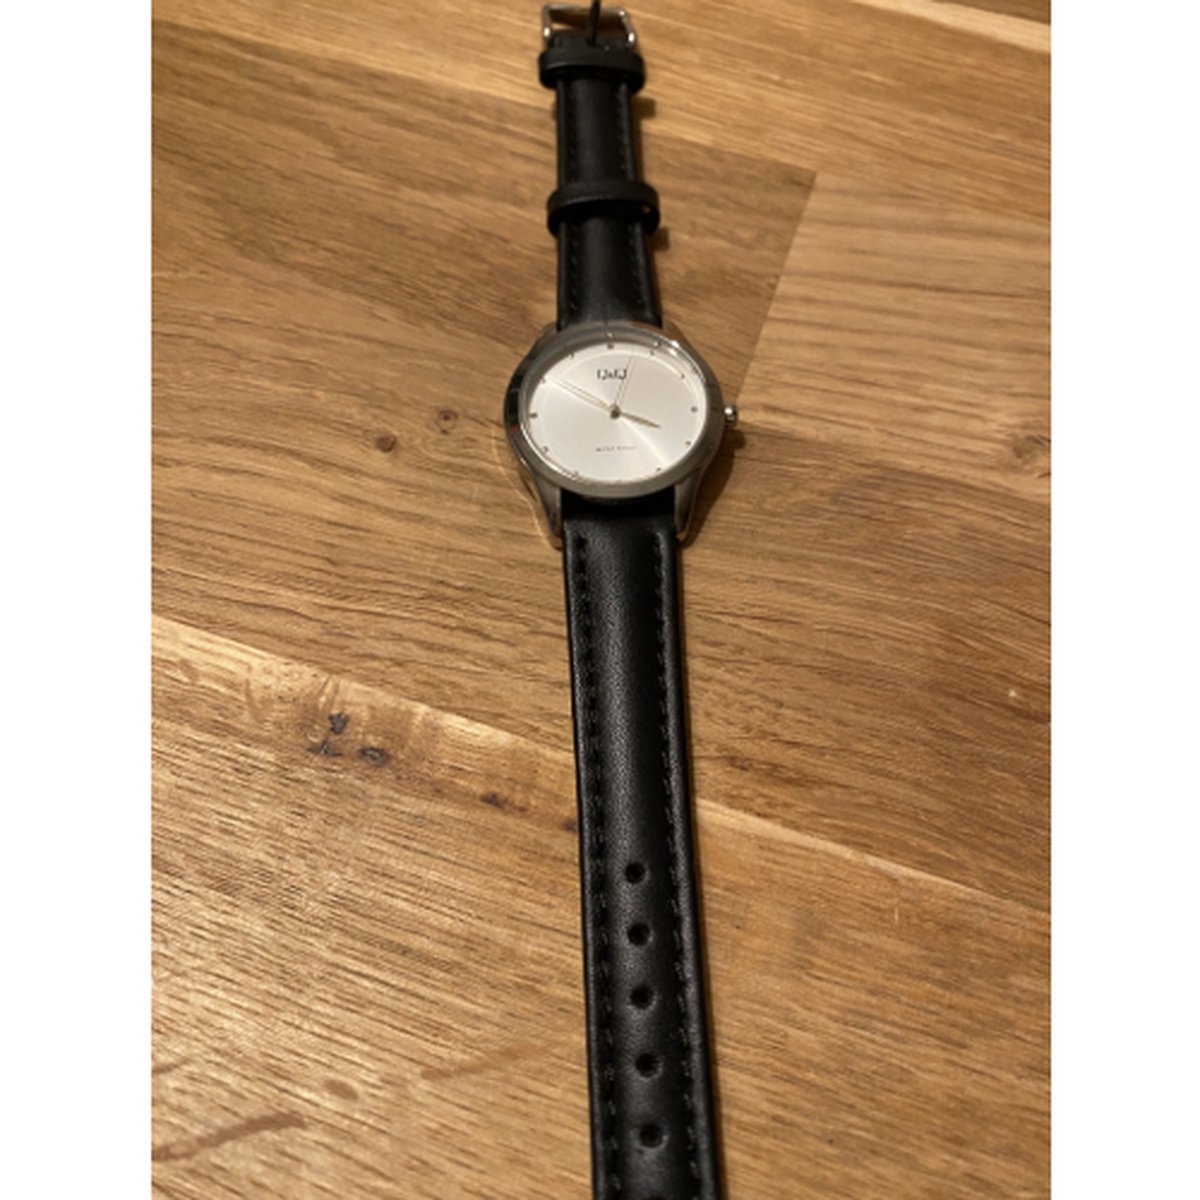 Horlogeband-dames-heren-16 mm-zwart-juweliers kwaliteit-anti allergisch